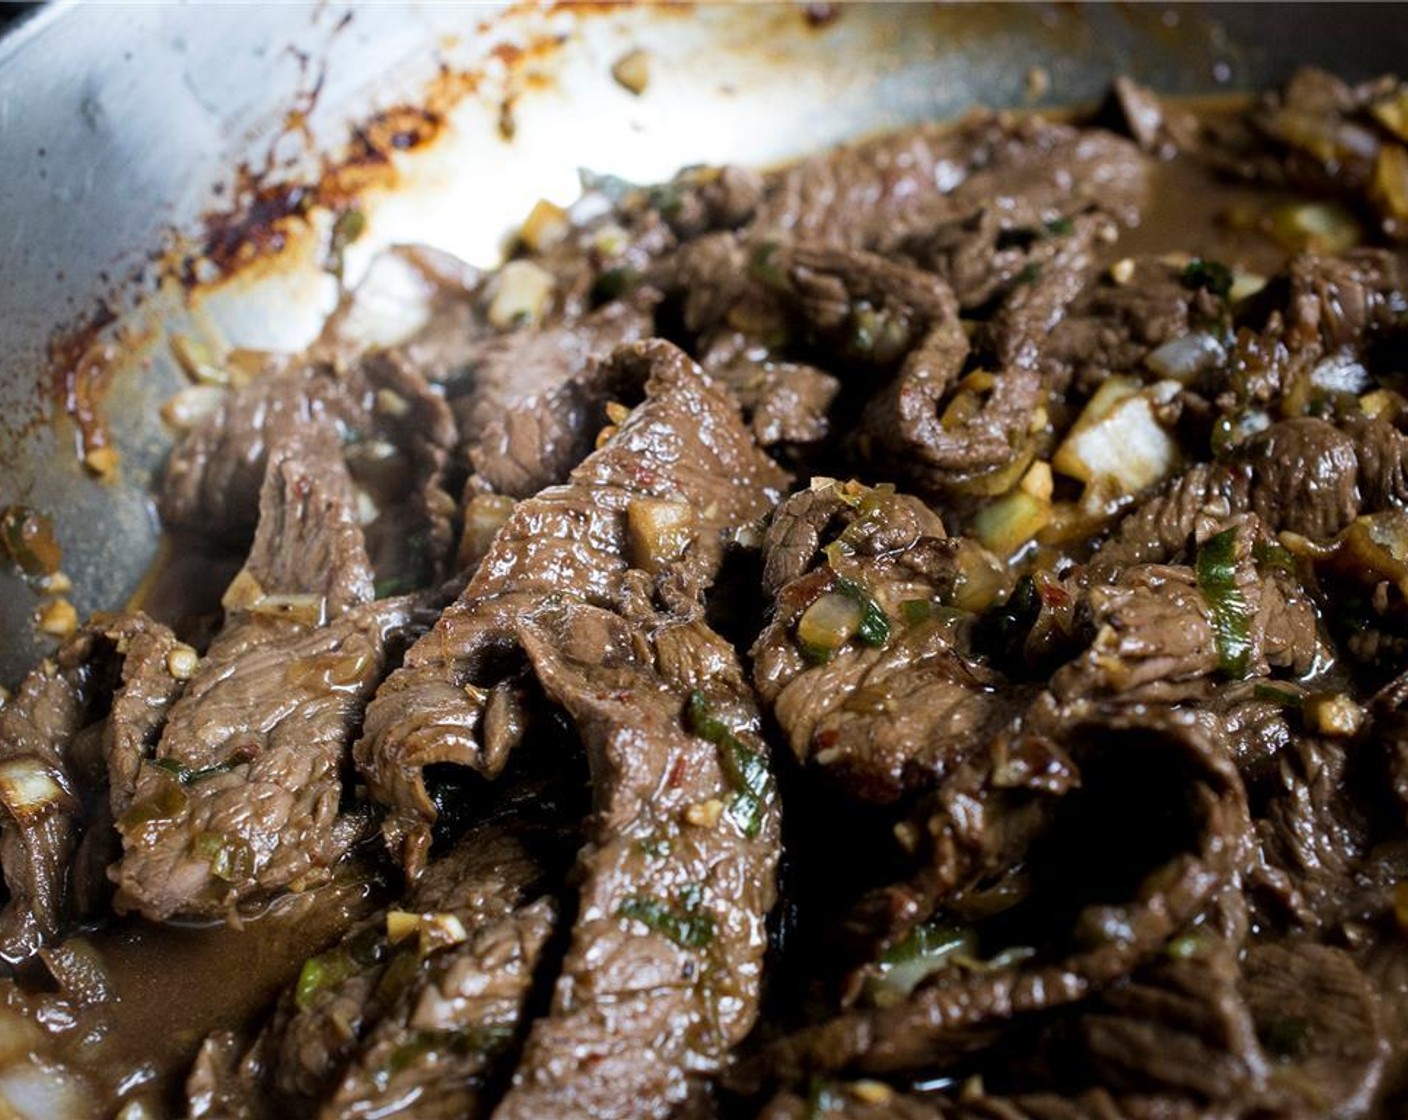 Schritt 9 Das Öl (2 Esslöffel) in einer grossen Pfanne bei mittlerer bis hoher Hitze erwärmen. Das aus der Marinade abgetropfte Rindfleisch in die Pfanne geben (portionsweise anbraten, falls die Pfanne zu klein ist). 1 Minute braten (dabei das Rindfleisch nicht wenden). Mit einer Prise Salz würzen, dann mit dem Rühren beginnen und das Rindfleisch für 1 - 2 Minuten schwenken, bis es gar ist. Vom Herd nehmen und beiseitestellen.